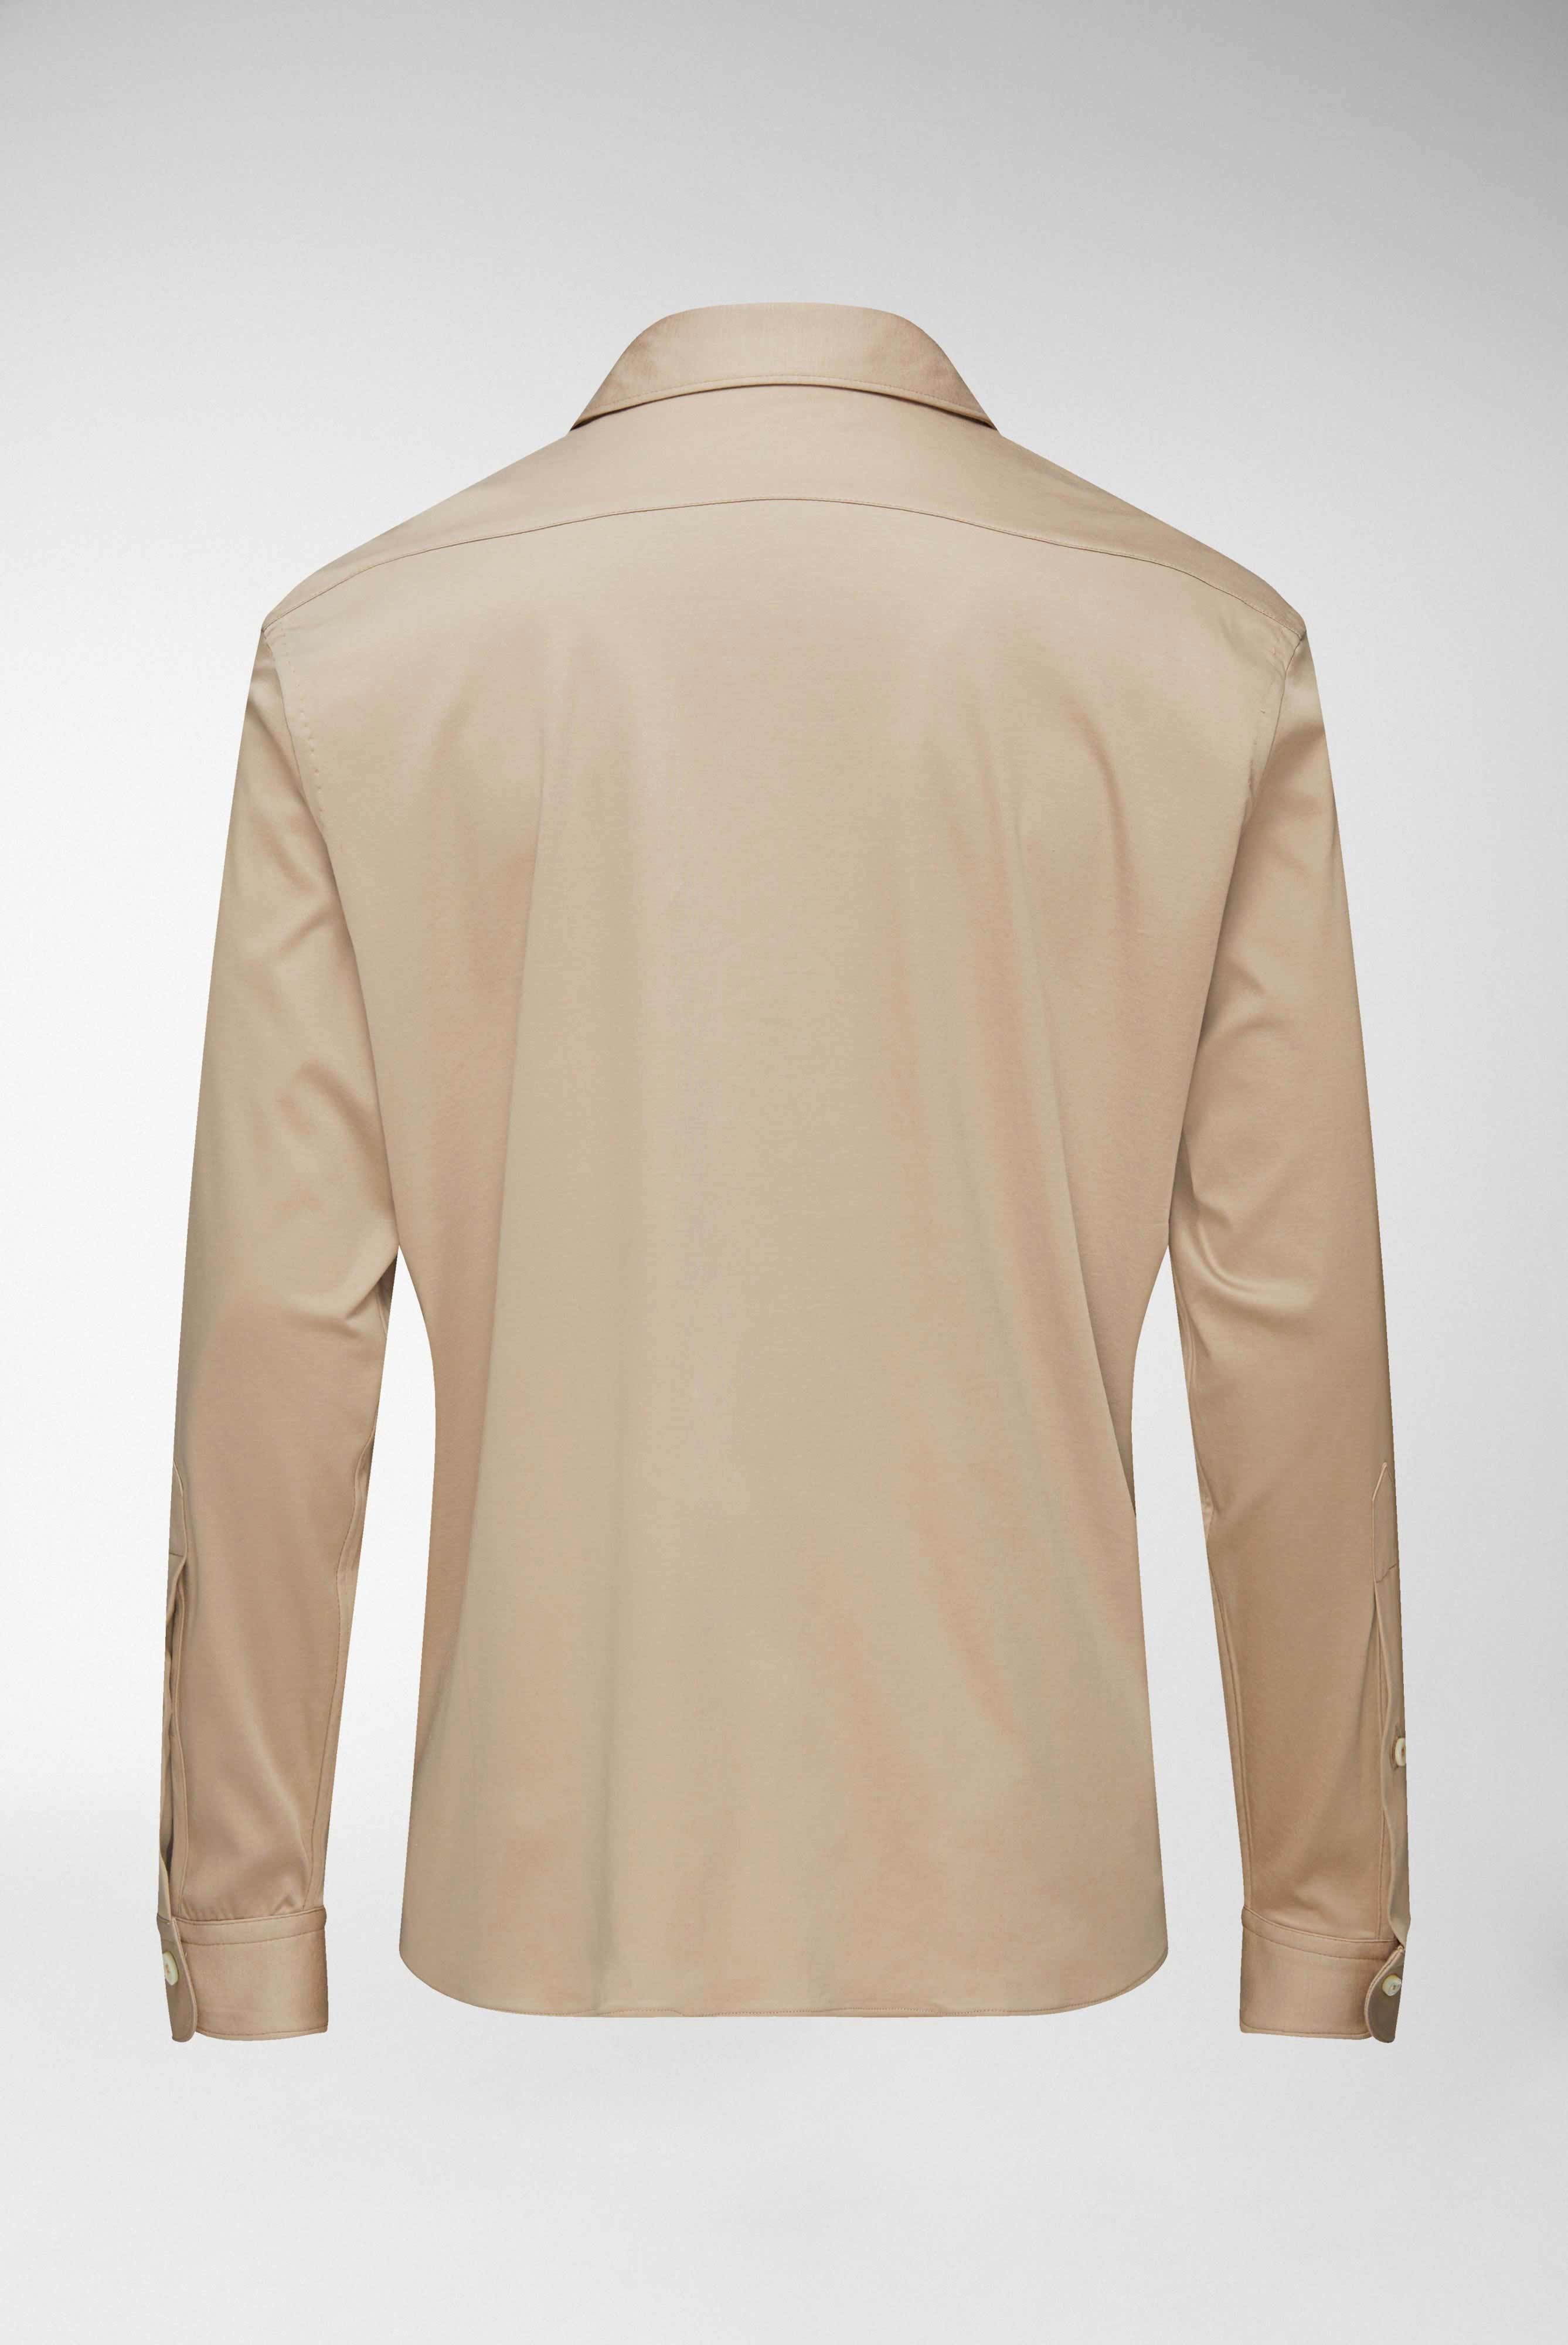 Casual Hemden+Jersey Hemd aus Schweizer Baumwolle Tailor Fit+20.1683.UC.180031.140.M